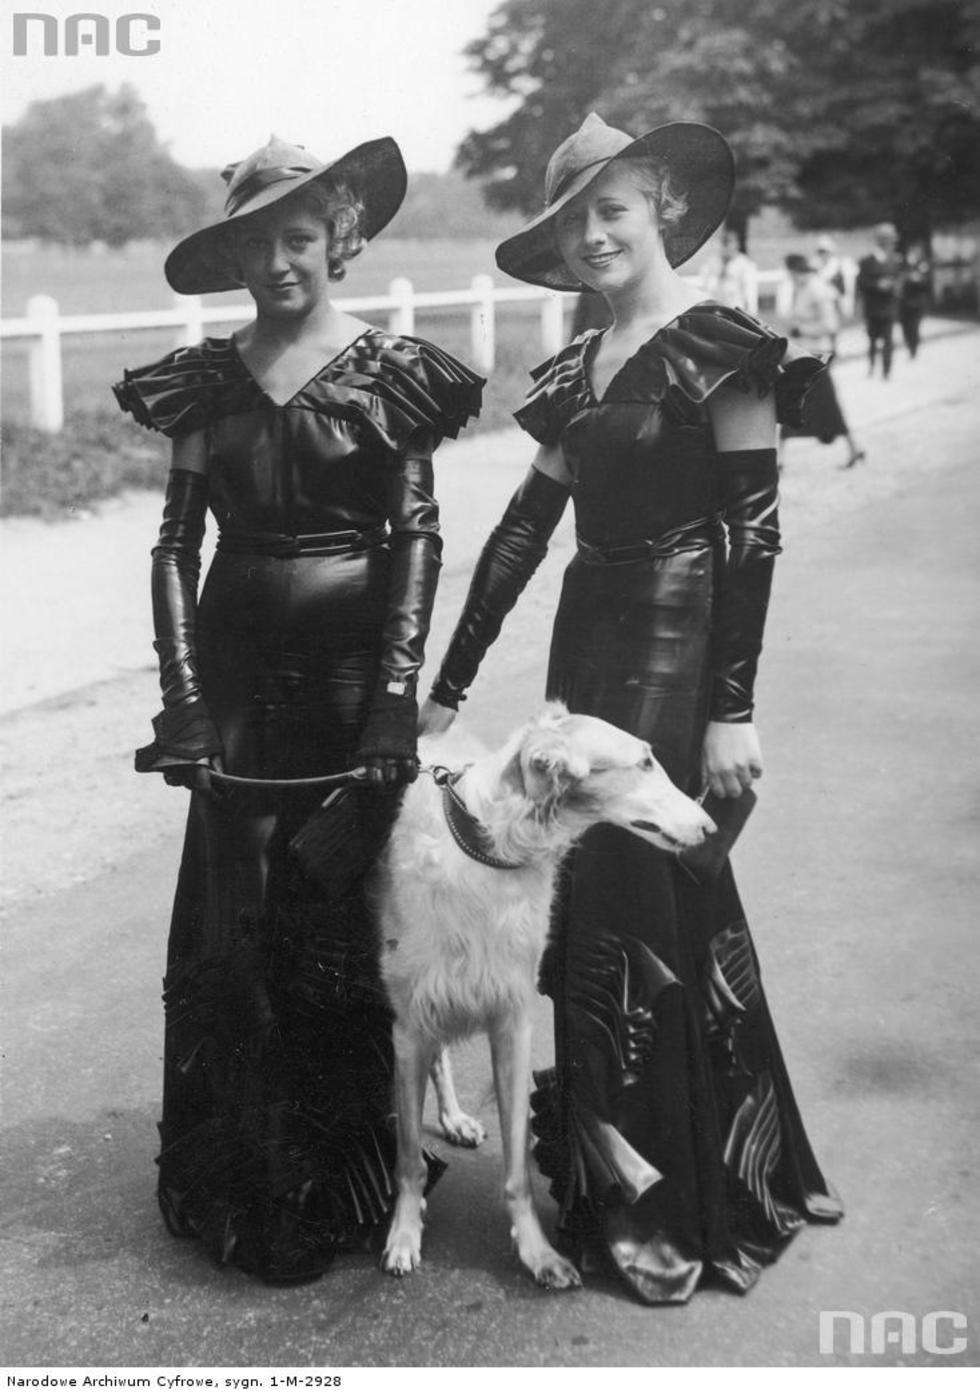  Konkurs elegancji w Paryżu. Kobiety w eleganckich sukniach z aplikacjami i marszczeniami, kapeluszach oraz chartem na smyczy podczas konkursu mody. Czerwiec 1933 r.

